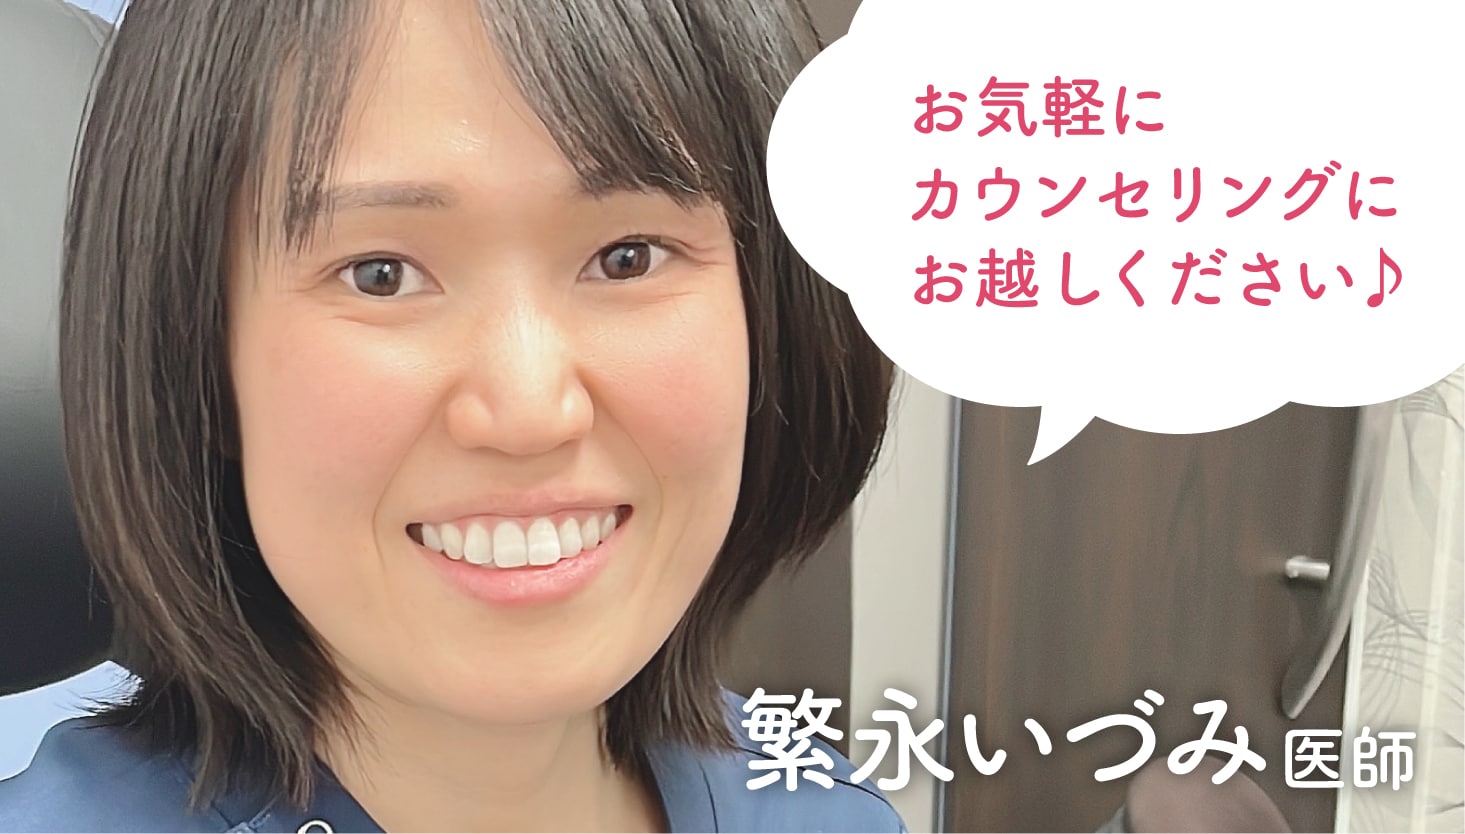 岡山で婦人科形成術を受けるなら、SBC岡山院の繁永医師にご相談ください！